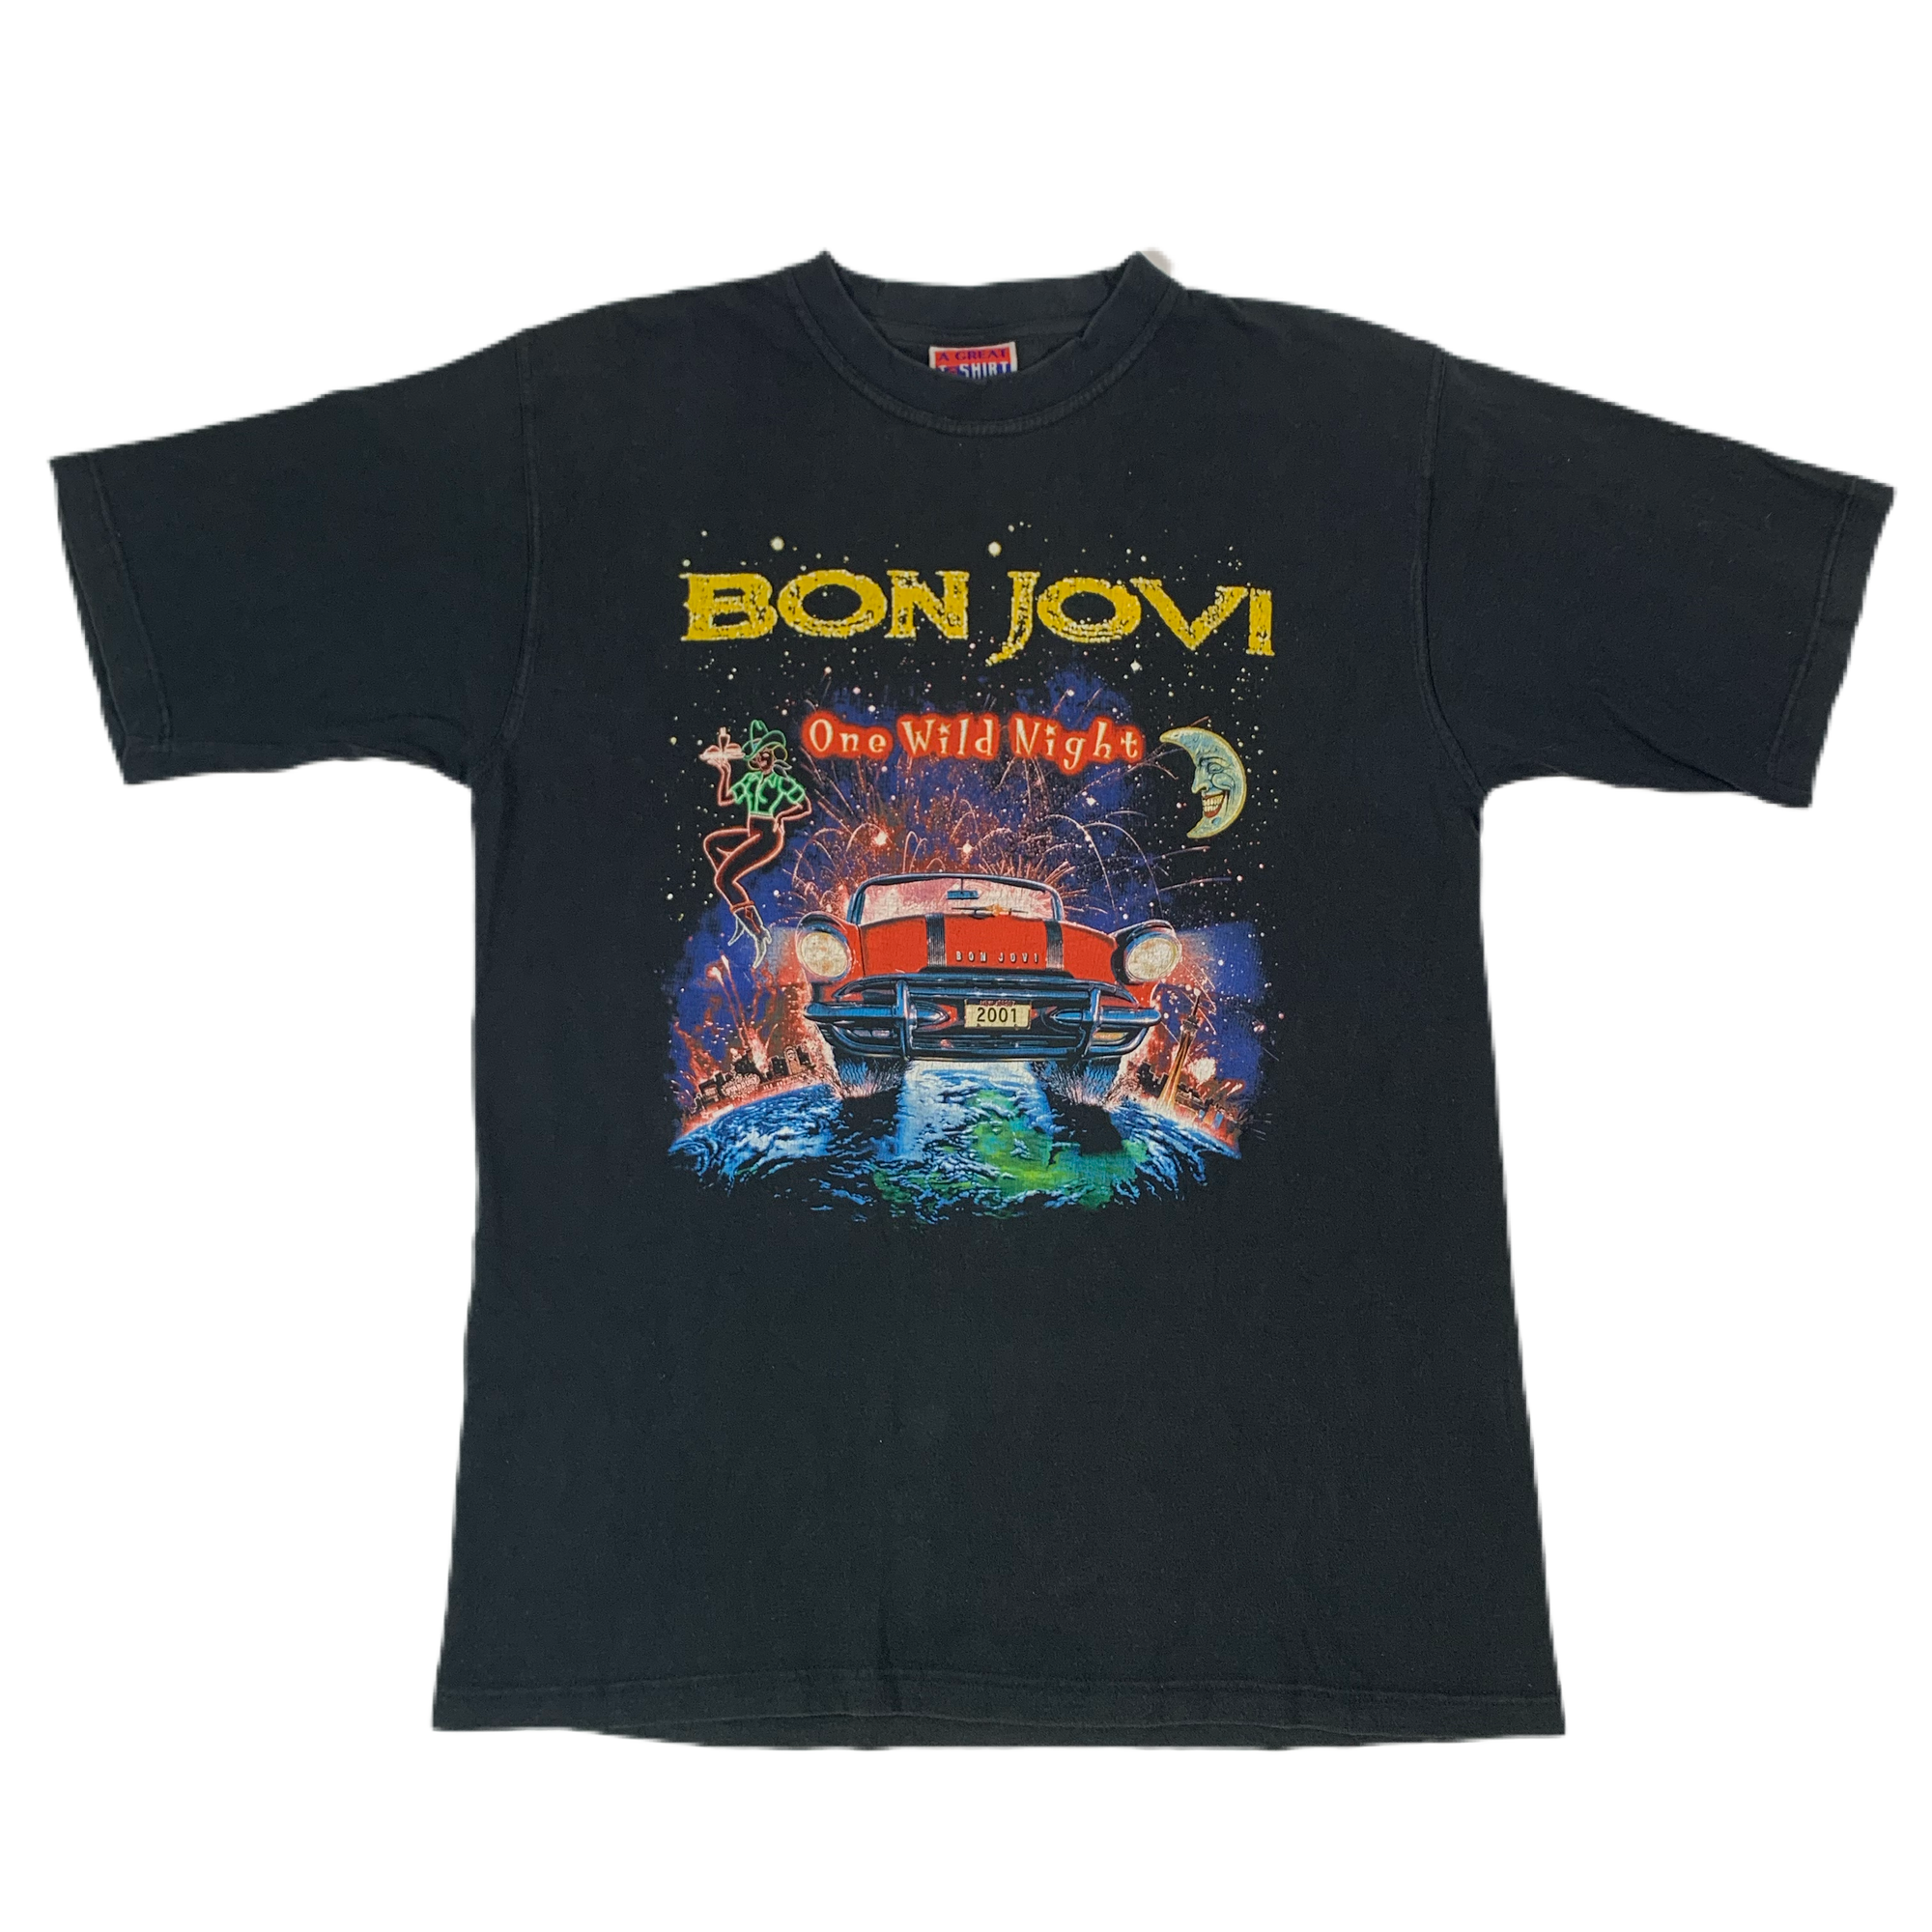 Vintage Bon Jovi “One Wild Night” T-Shirt - jointcustodydc